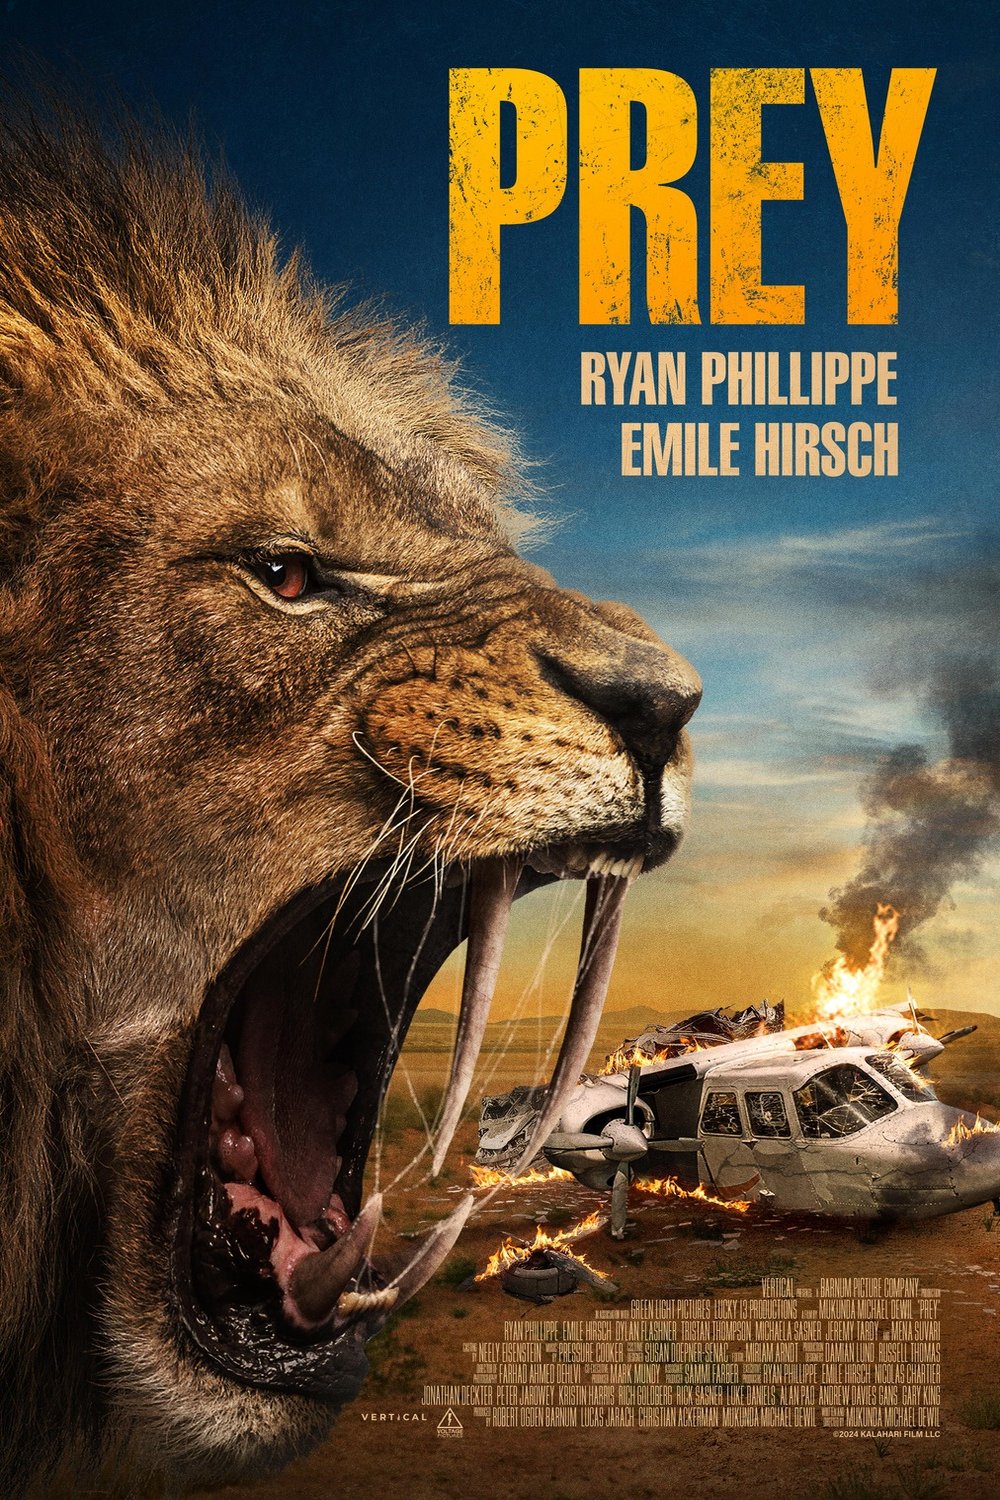 Poster of the movie Kalahari